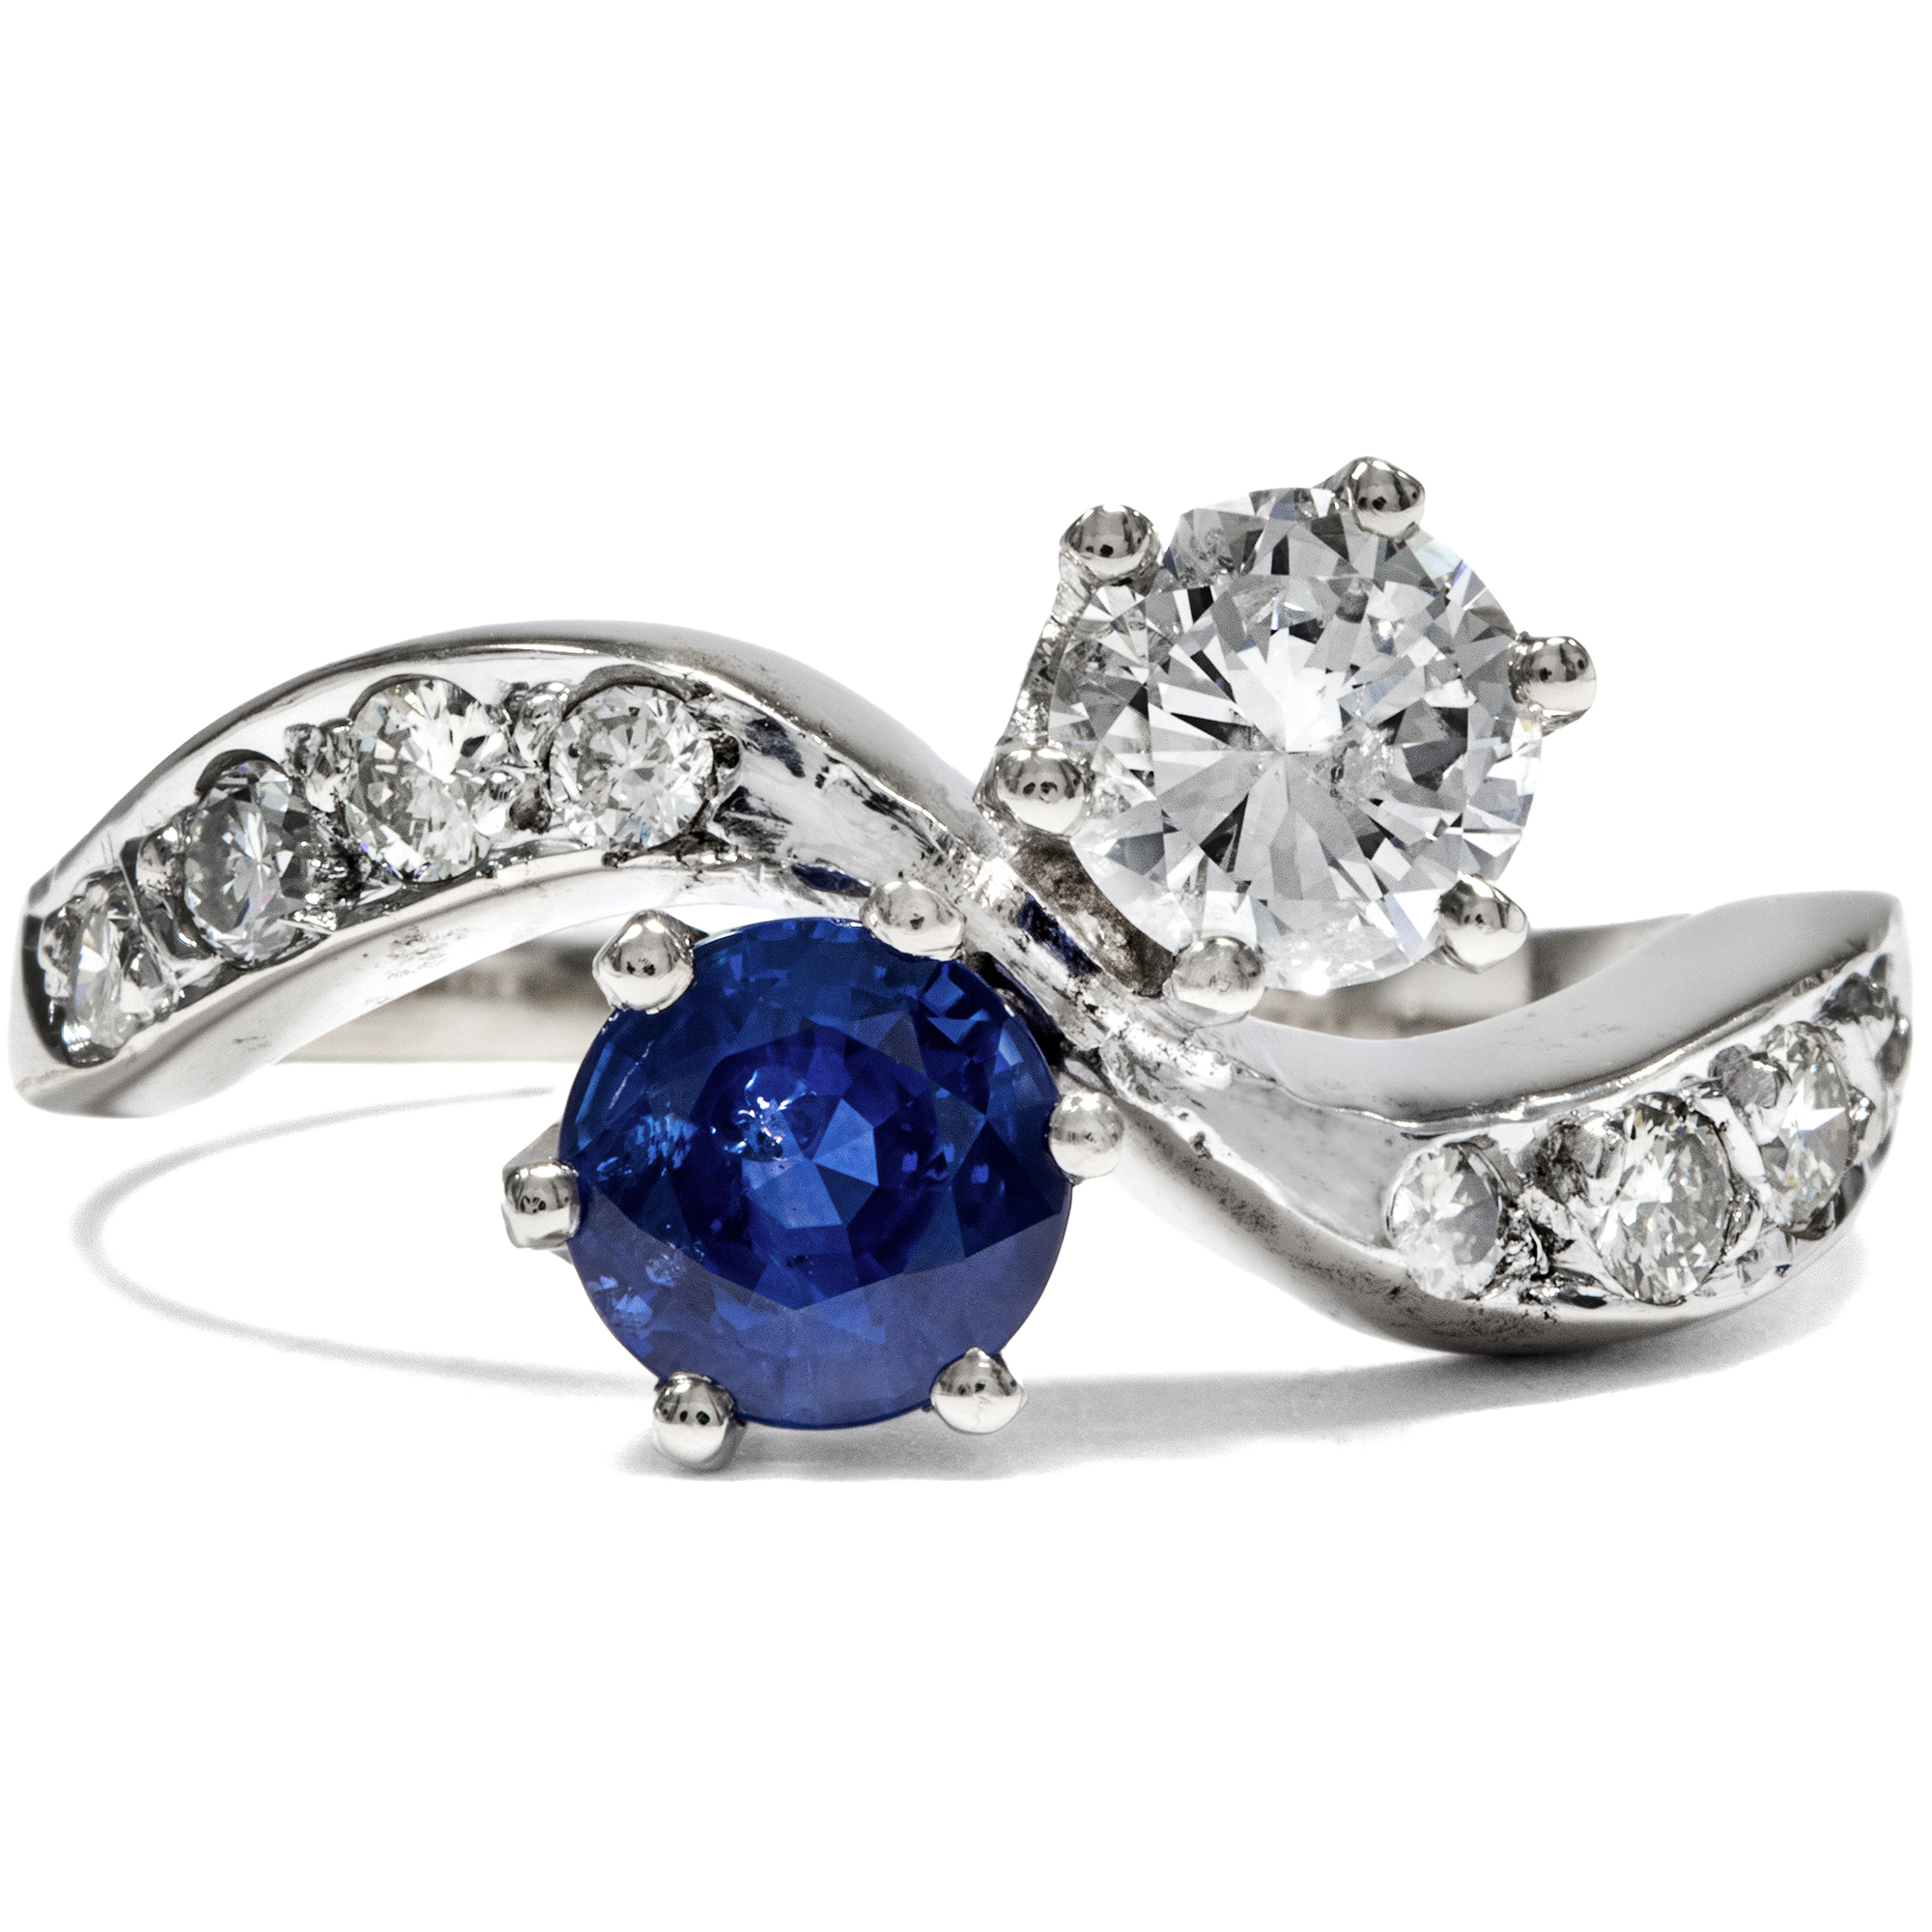 Vintage Toi-et-moi Ring mit Brillanten und blauem Saphir, um 1970